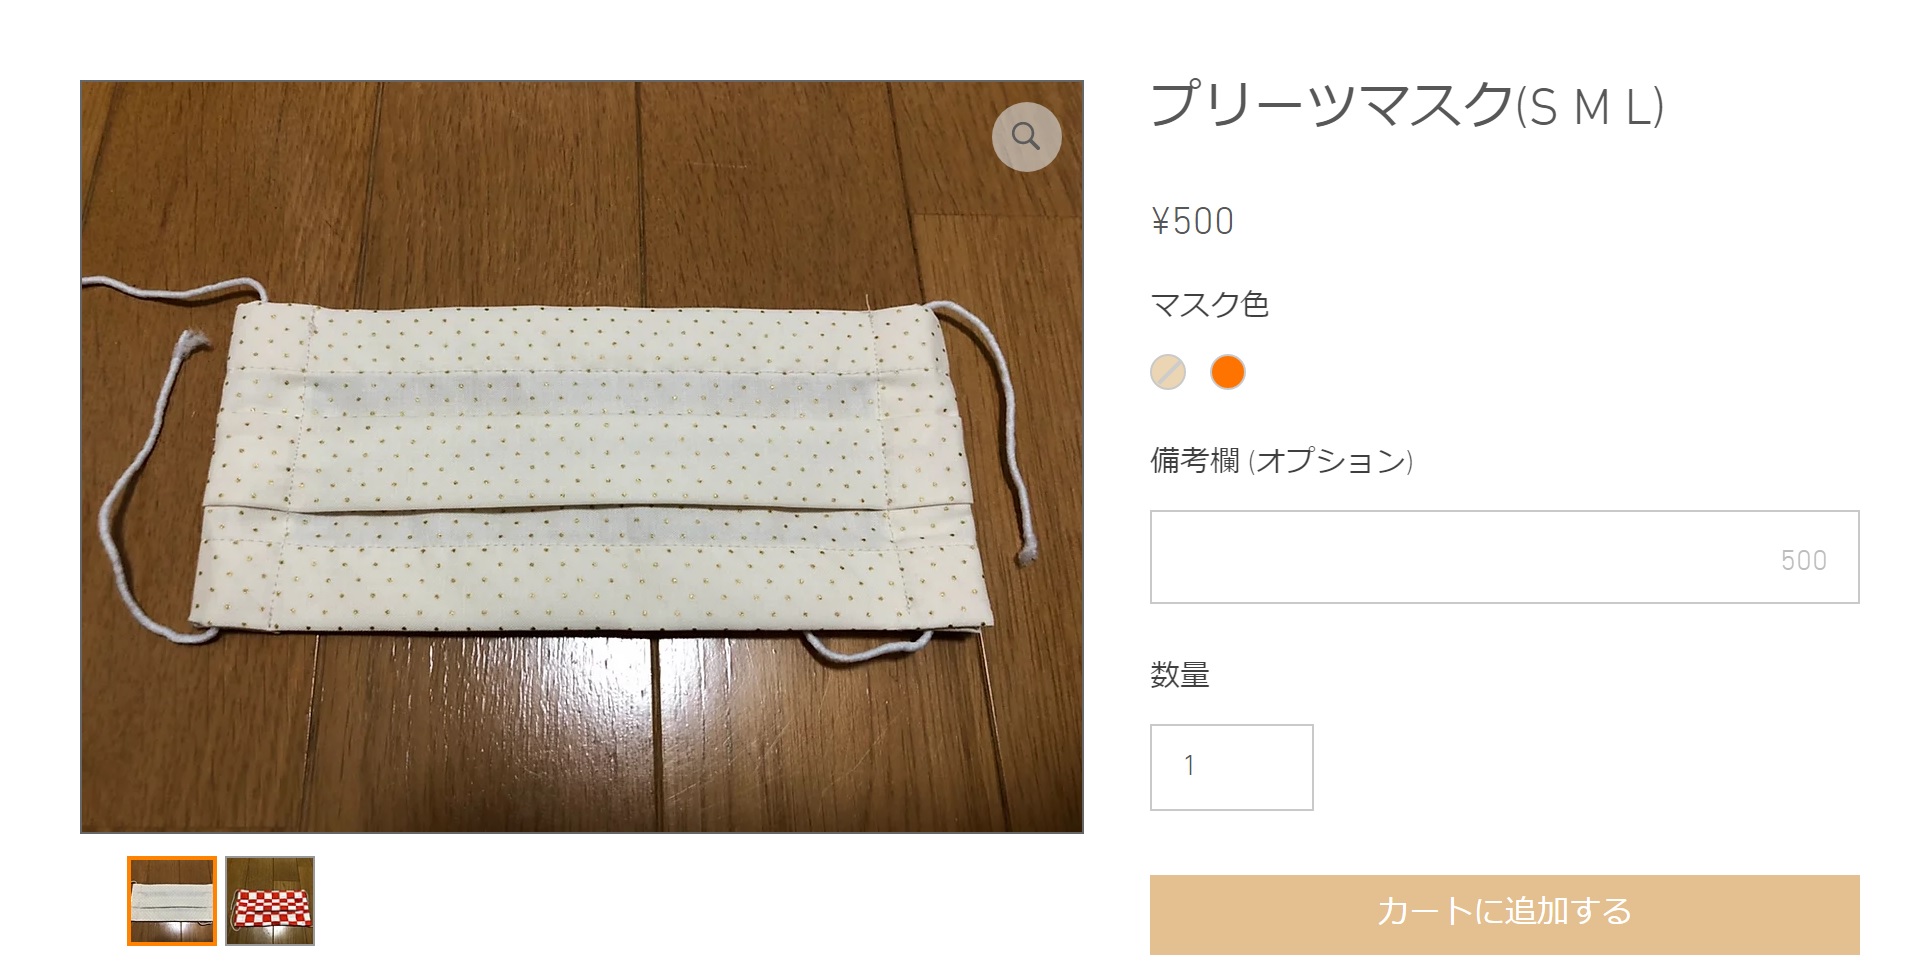 マスク500円